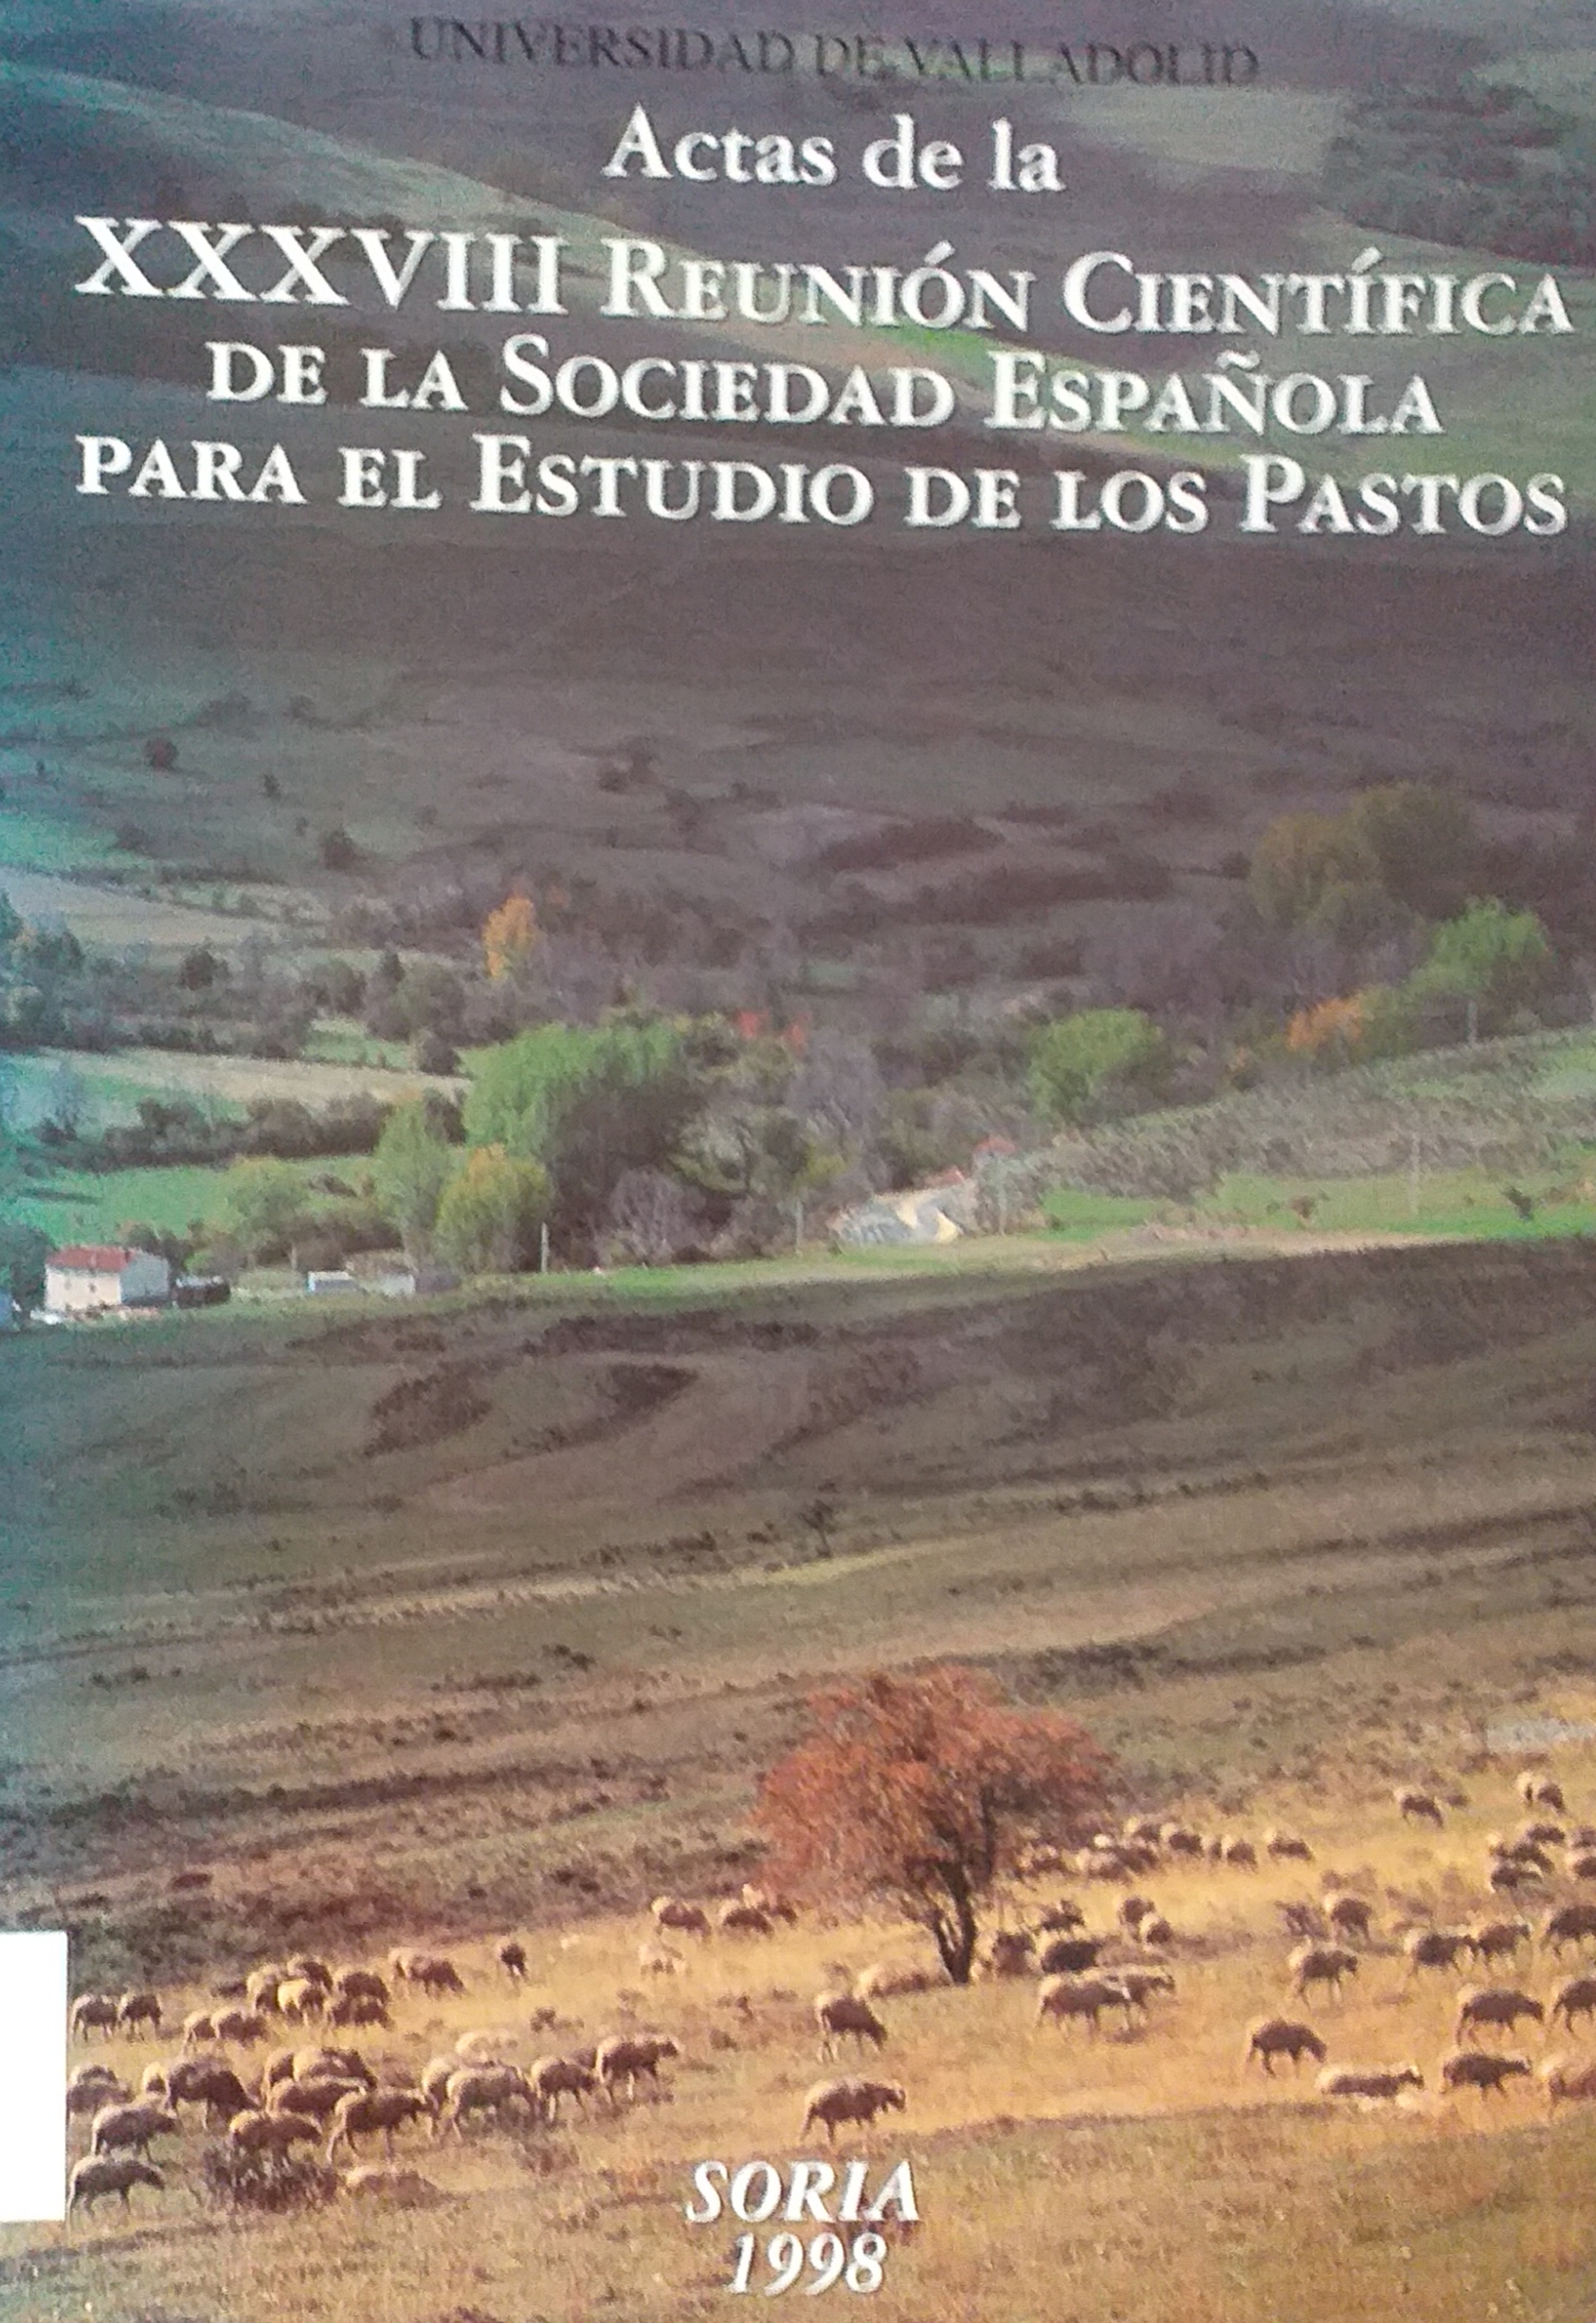 Imagen de portada del libro Actas de la XXXVIII Reunión Científica de la Sociedad Española para el Estudio de los Pastos